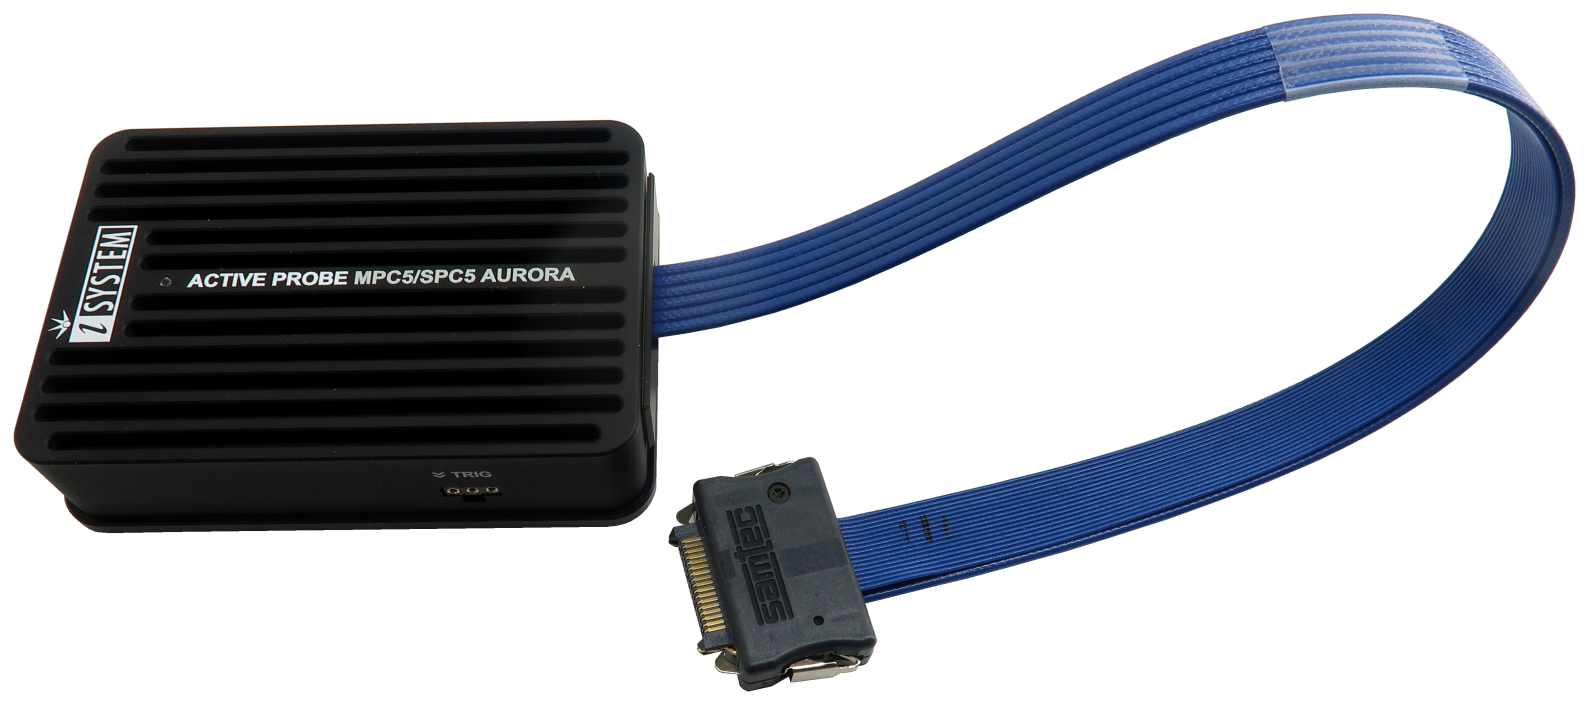 Active Probe for MPC5x/SPC5x Aurora